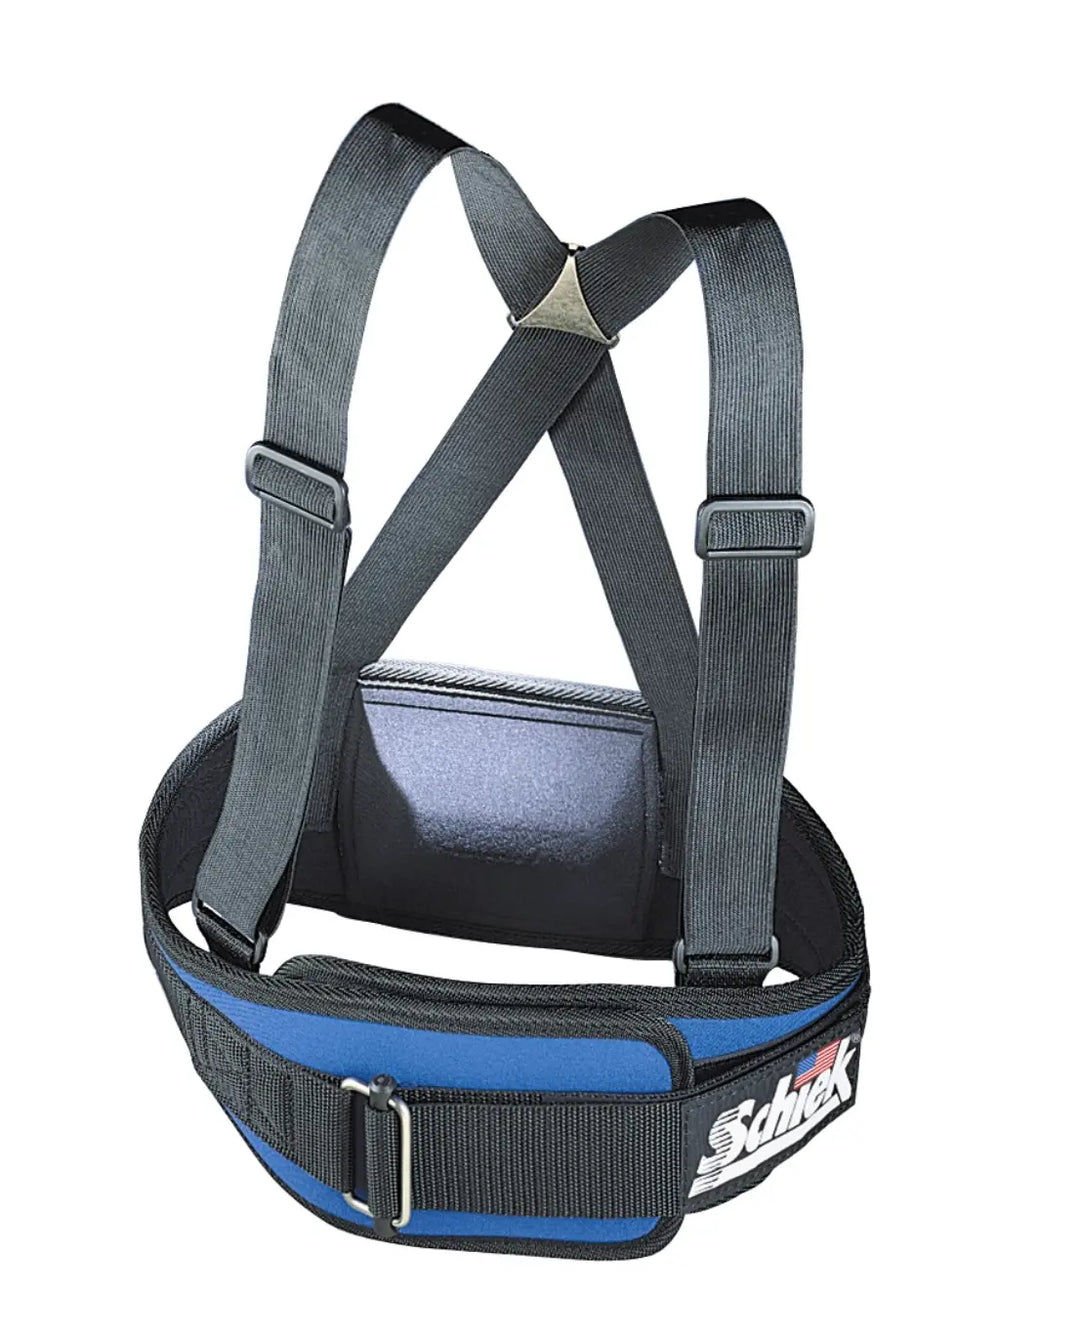 Model 4006 Support Belt with Suspenders - Schiek Sports